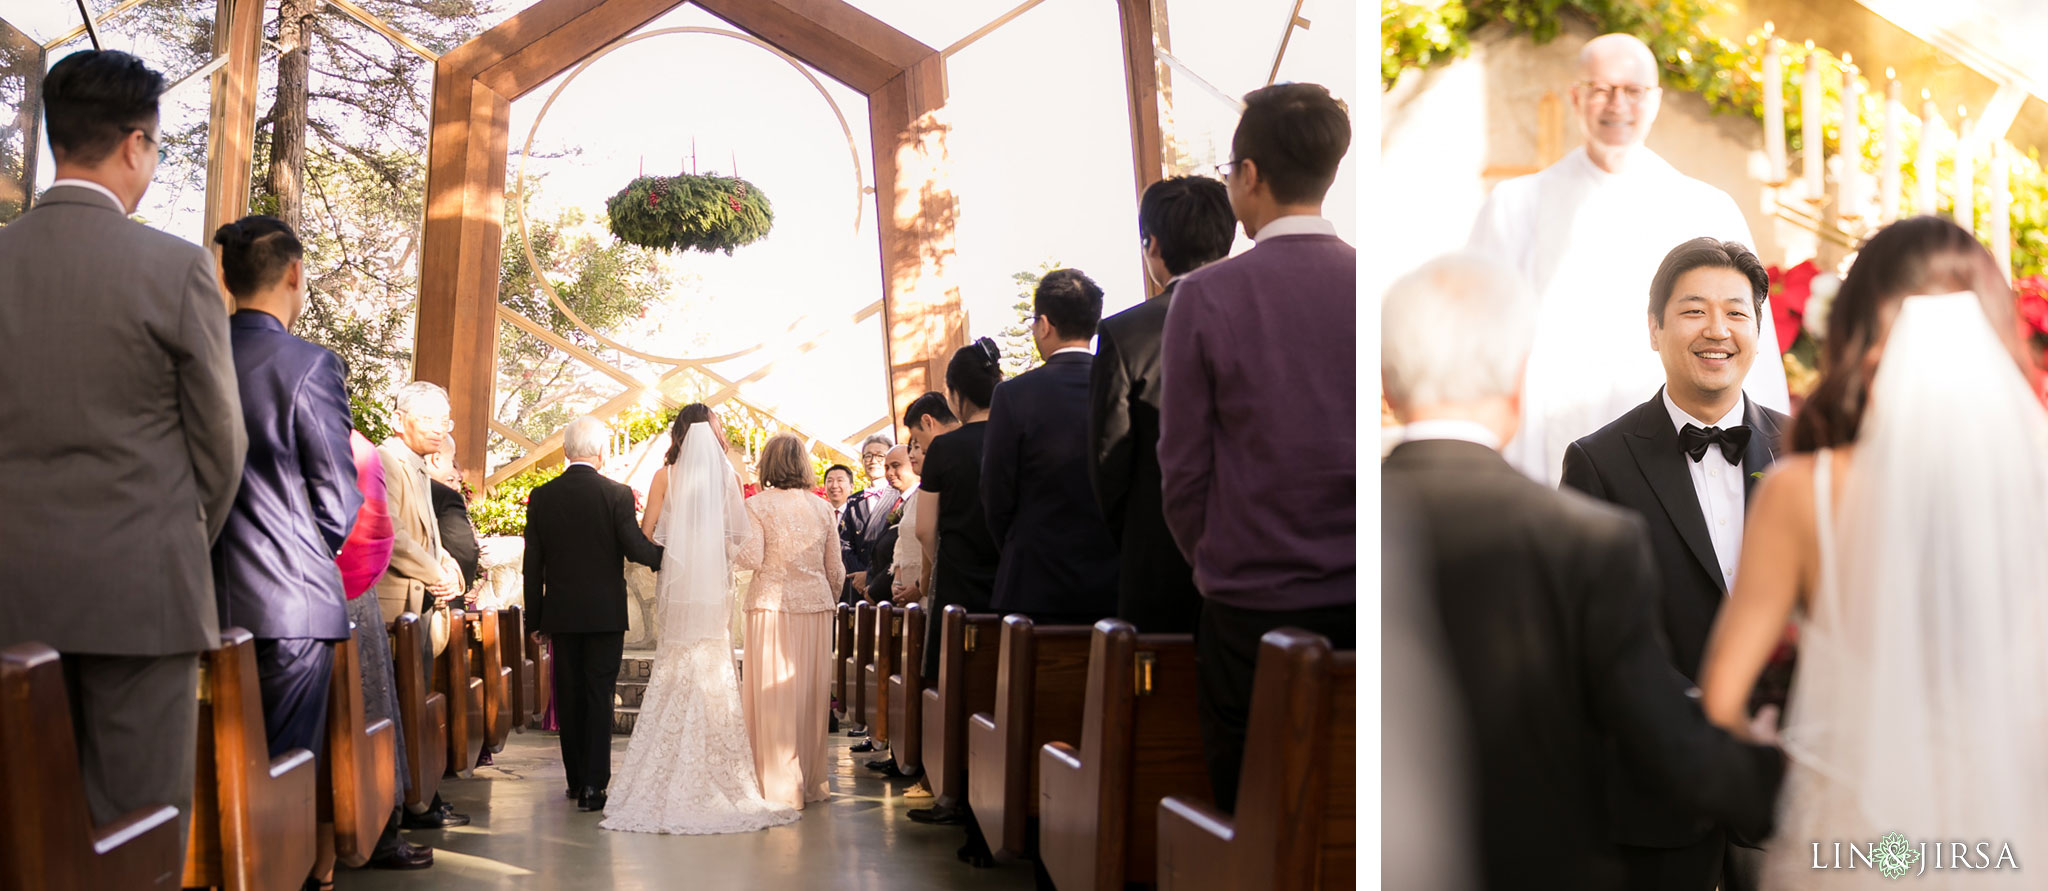 23 wayfarers chapel wedding ceremony photography